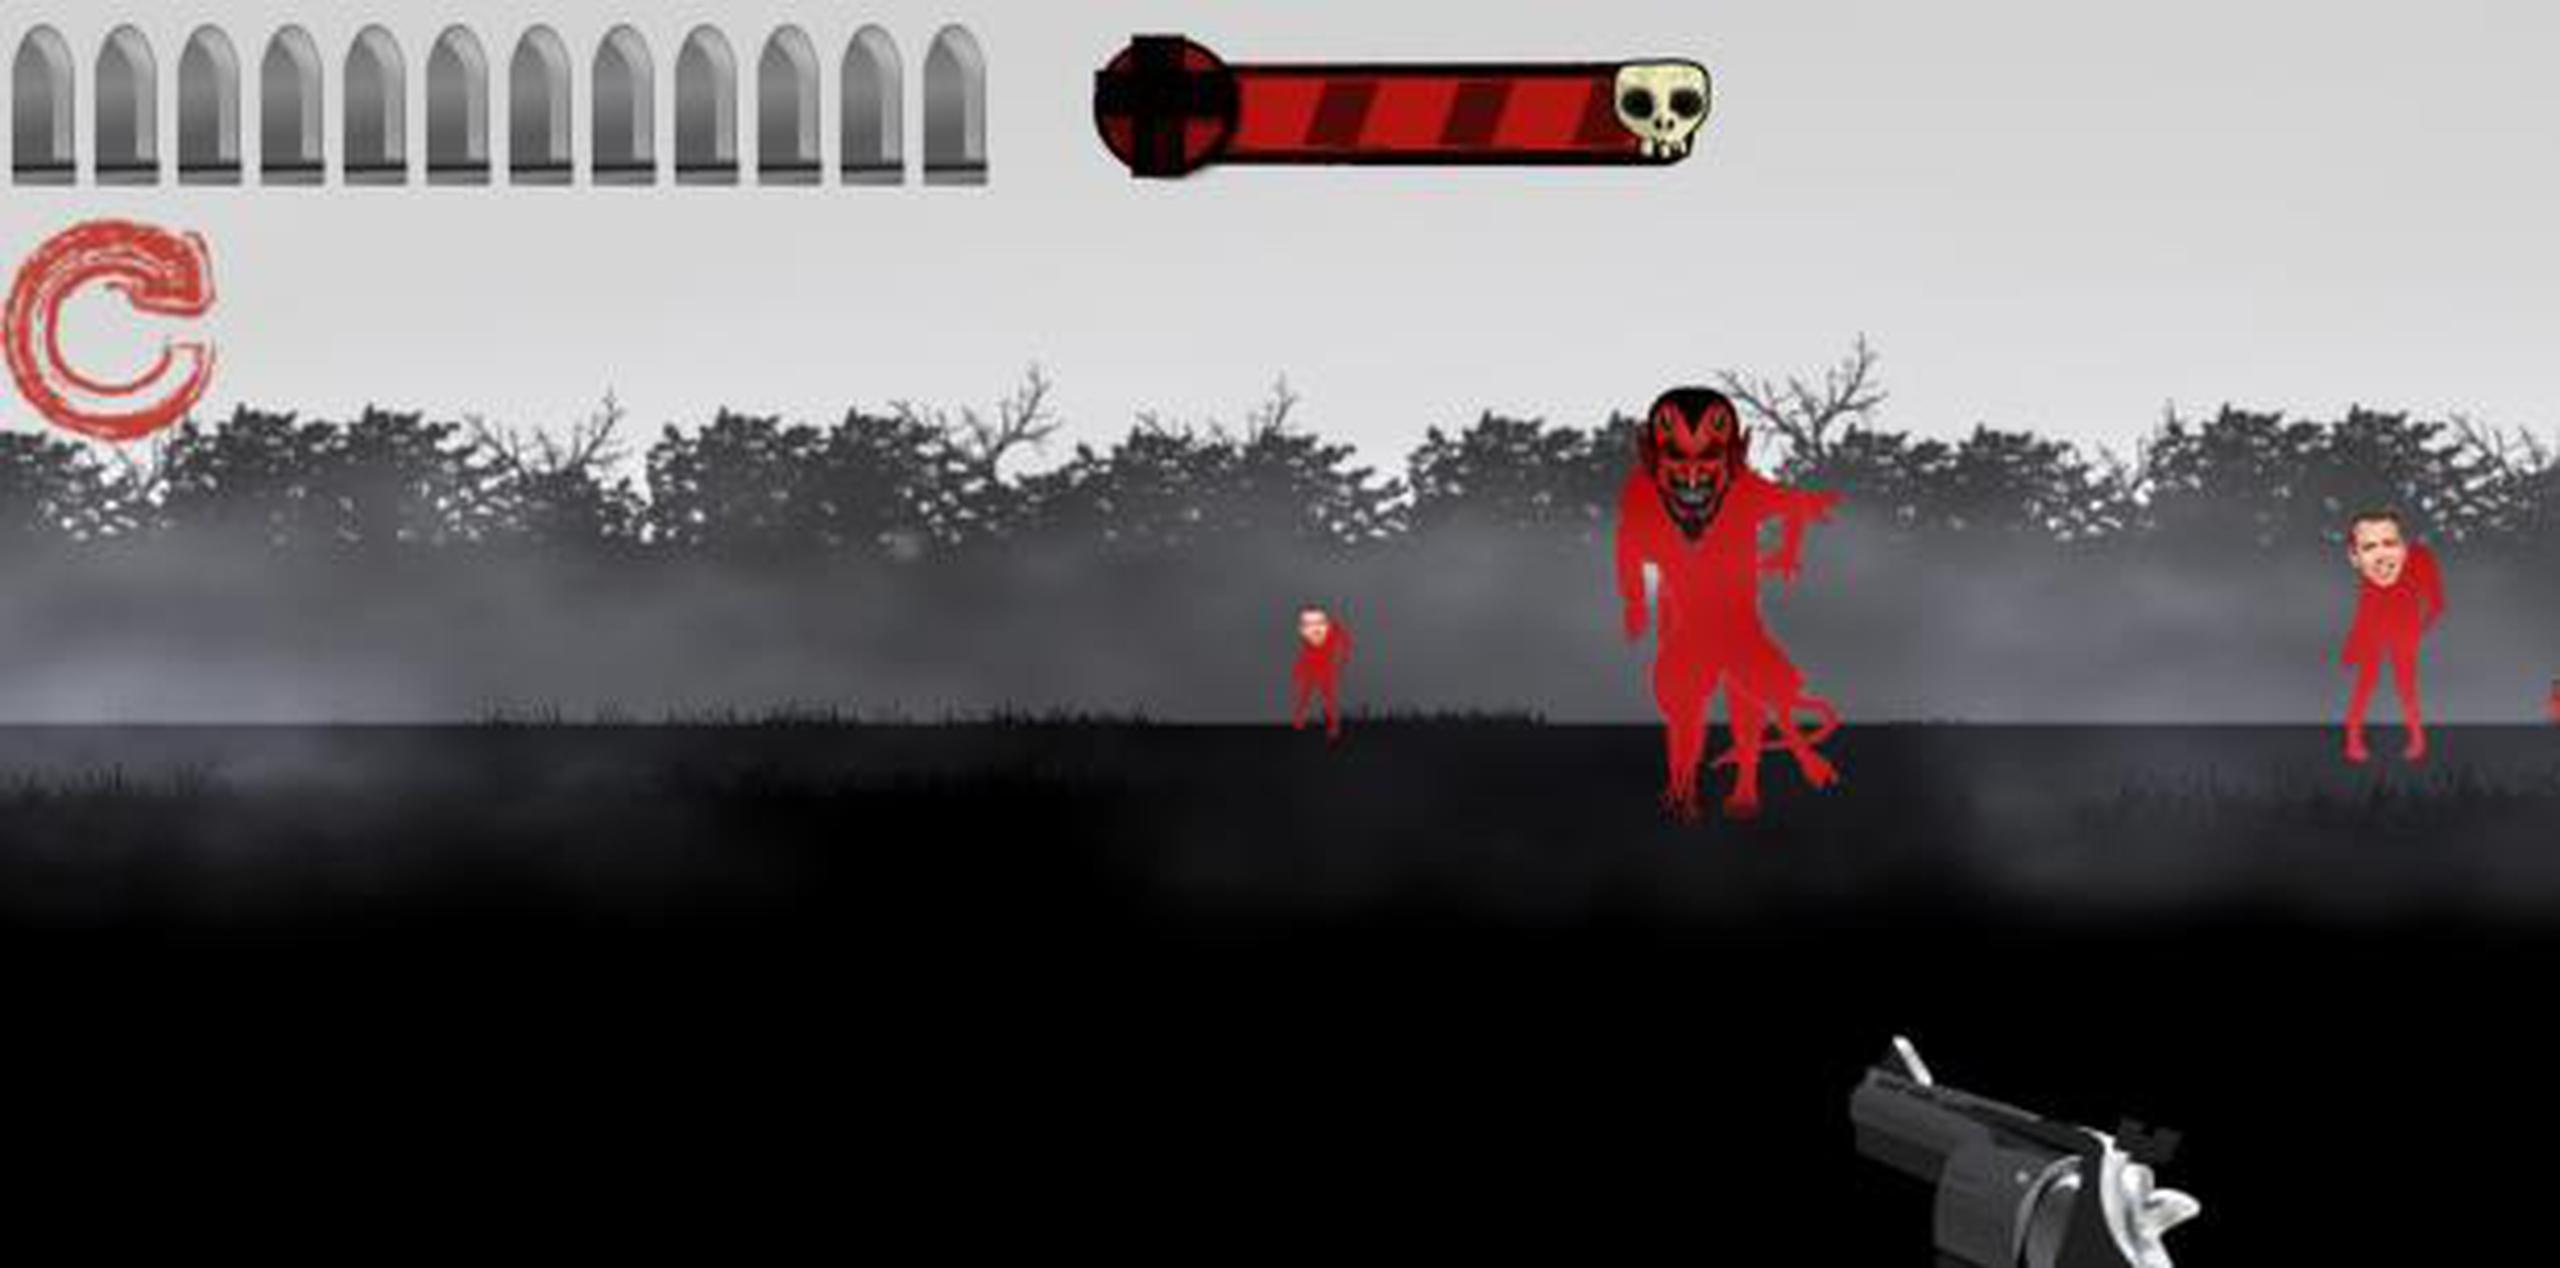 Al entrar al videojuego, aparece una mano tatuada, como la del trapero Almighty, con un revólver. El trapero no se ha atribuido el juego. (Captura)